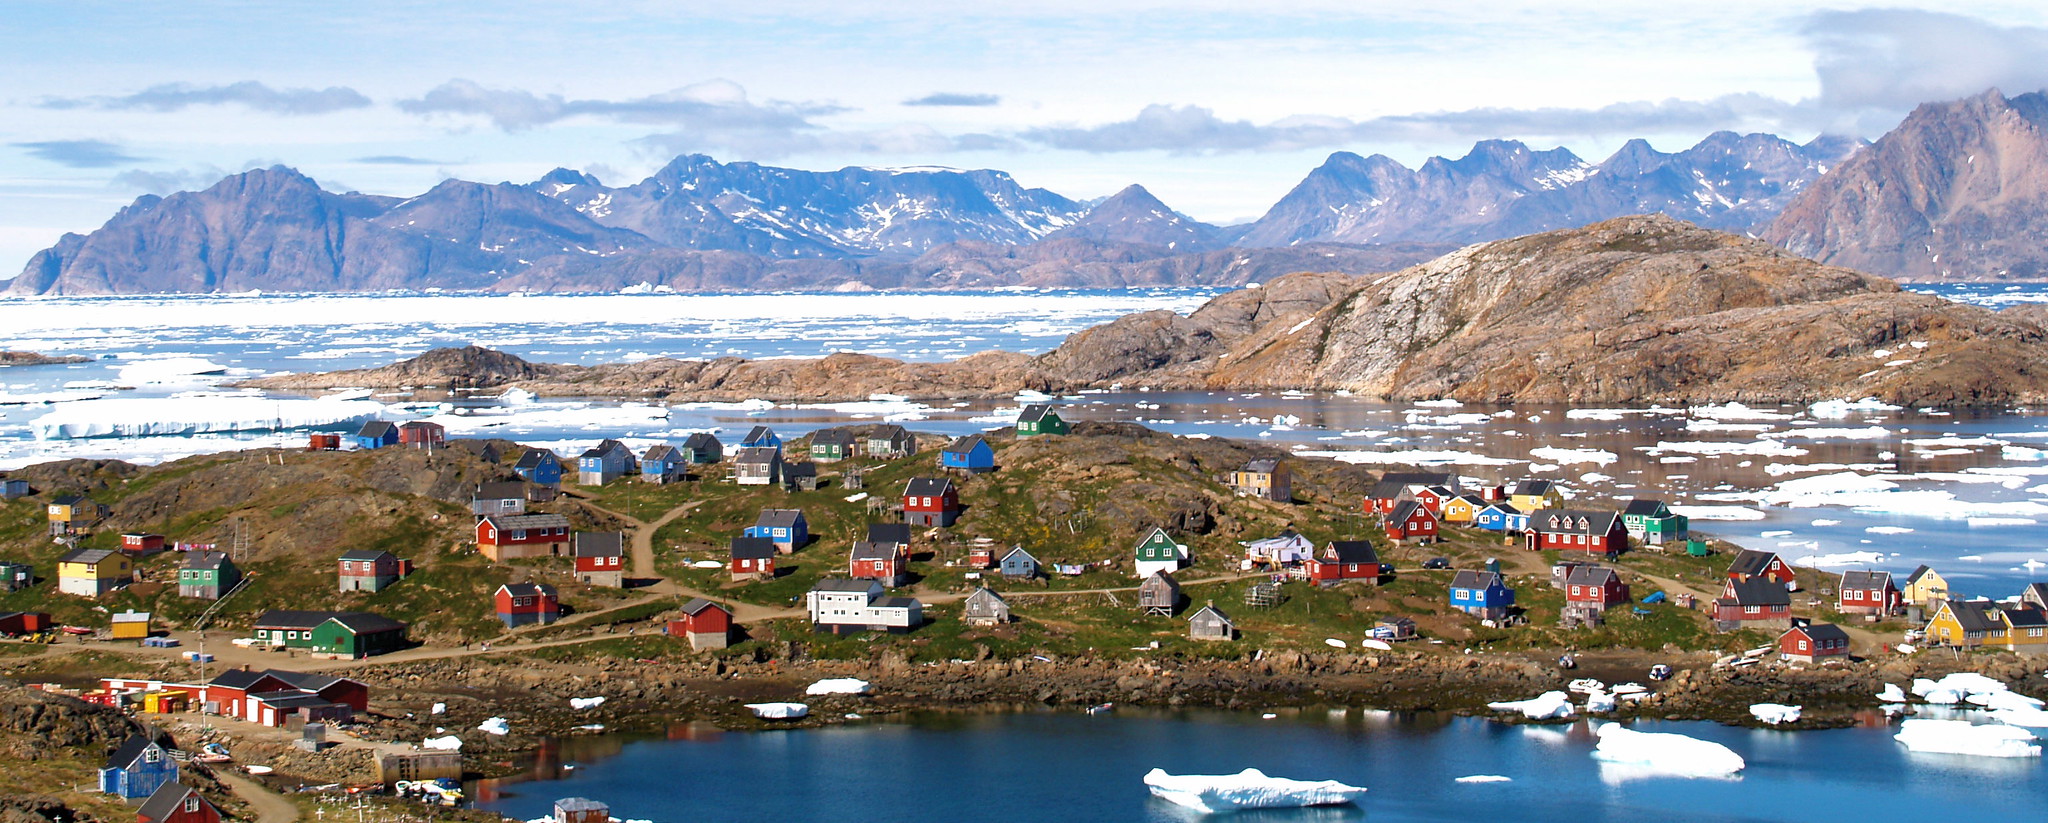 Hus ligger spredt på et landområde. I bakgrunnen ses høye fjell, og havet rundt er delvis dekket av is.